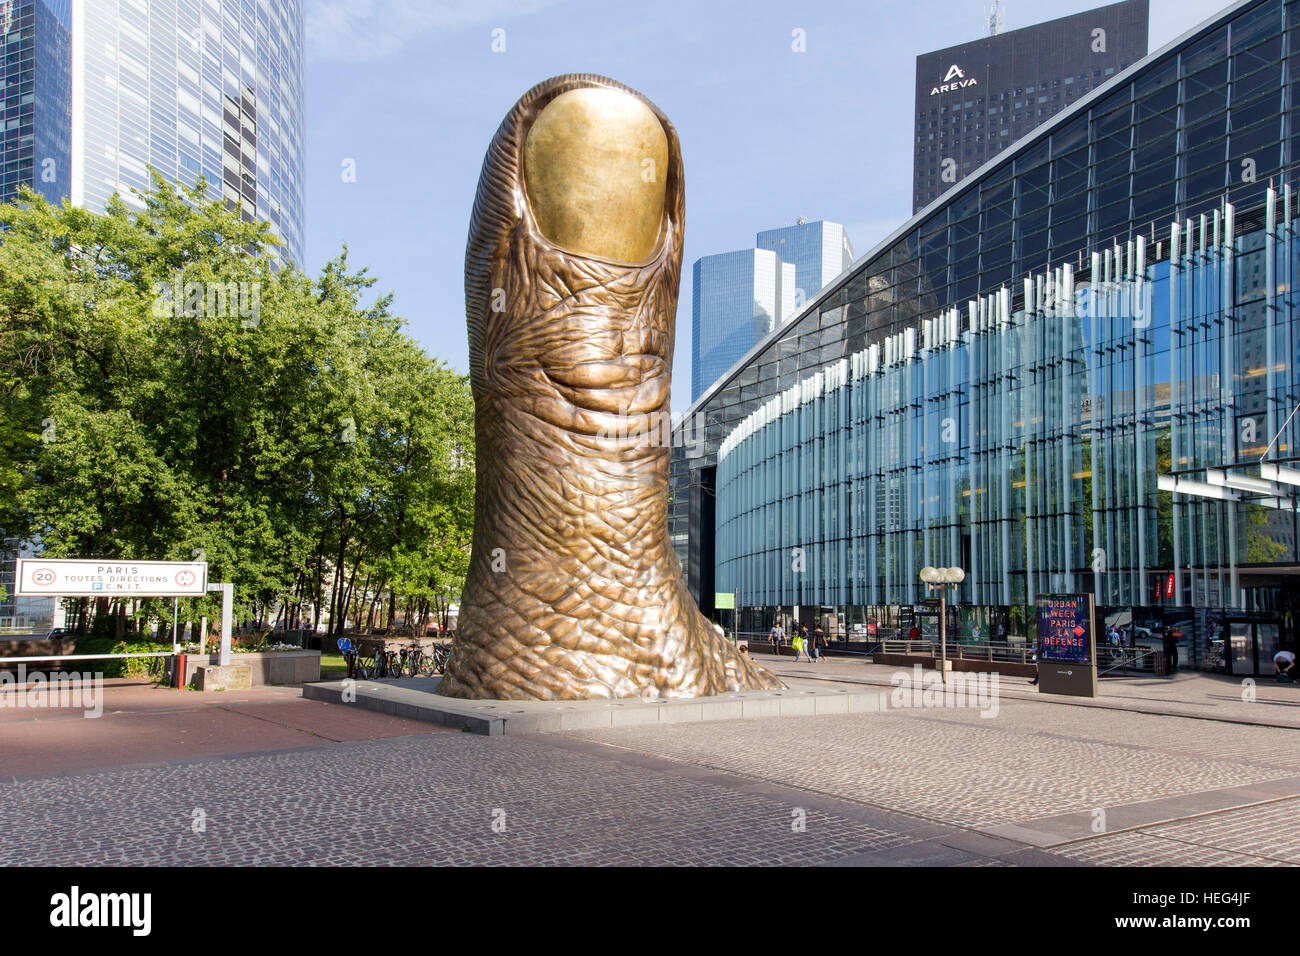 Le Pouce, giant thumb sculpture, artist César Baldaccini, skyscrapers, La Defense business district, Hauts-de-Seine, Paris Stock Photo